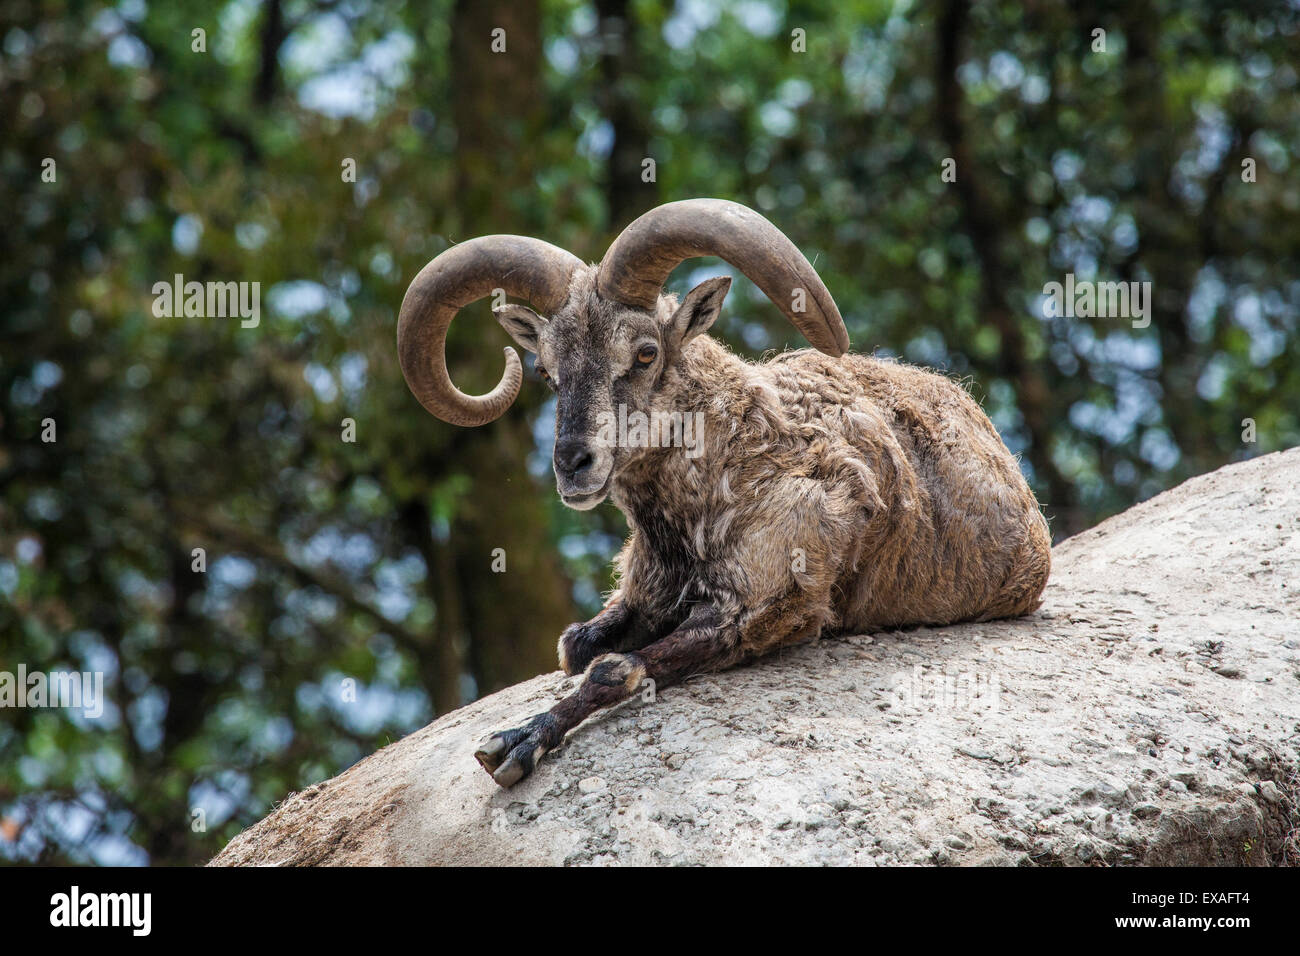 Chèvre typique du nord de l'Inde repose sur un rocher au soleil dans une réserve faunique, Darjeeling, Inde, Asie Banque D'Images